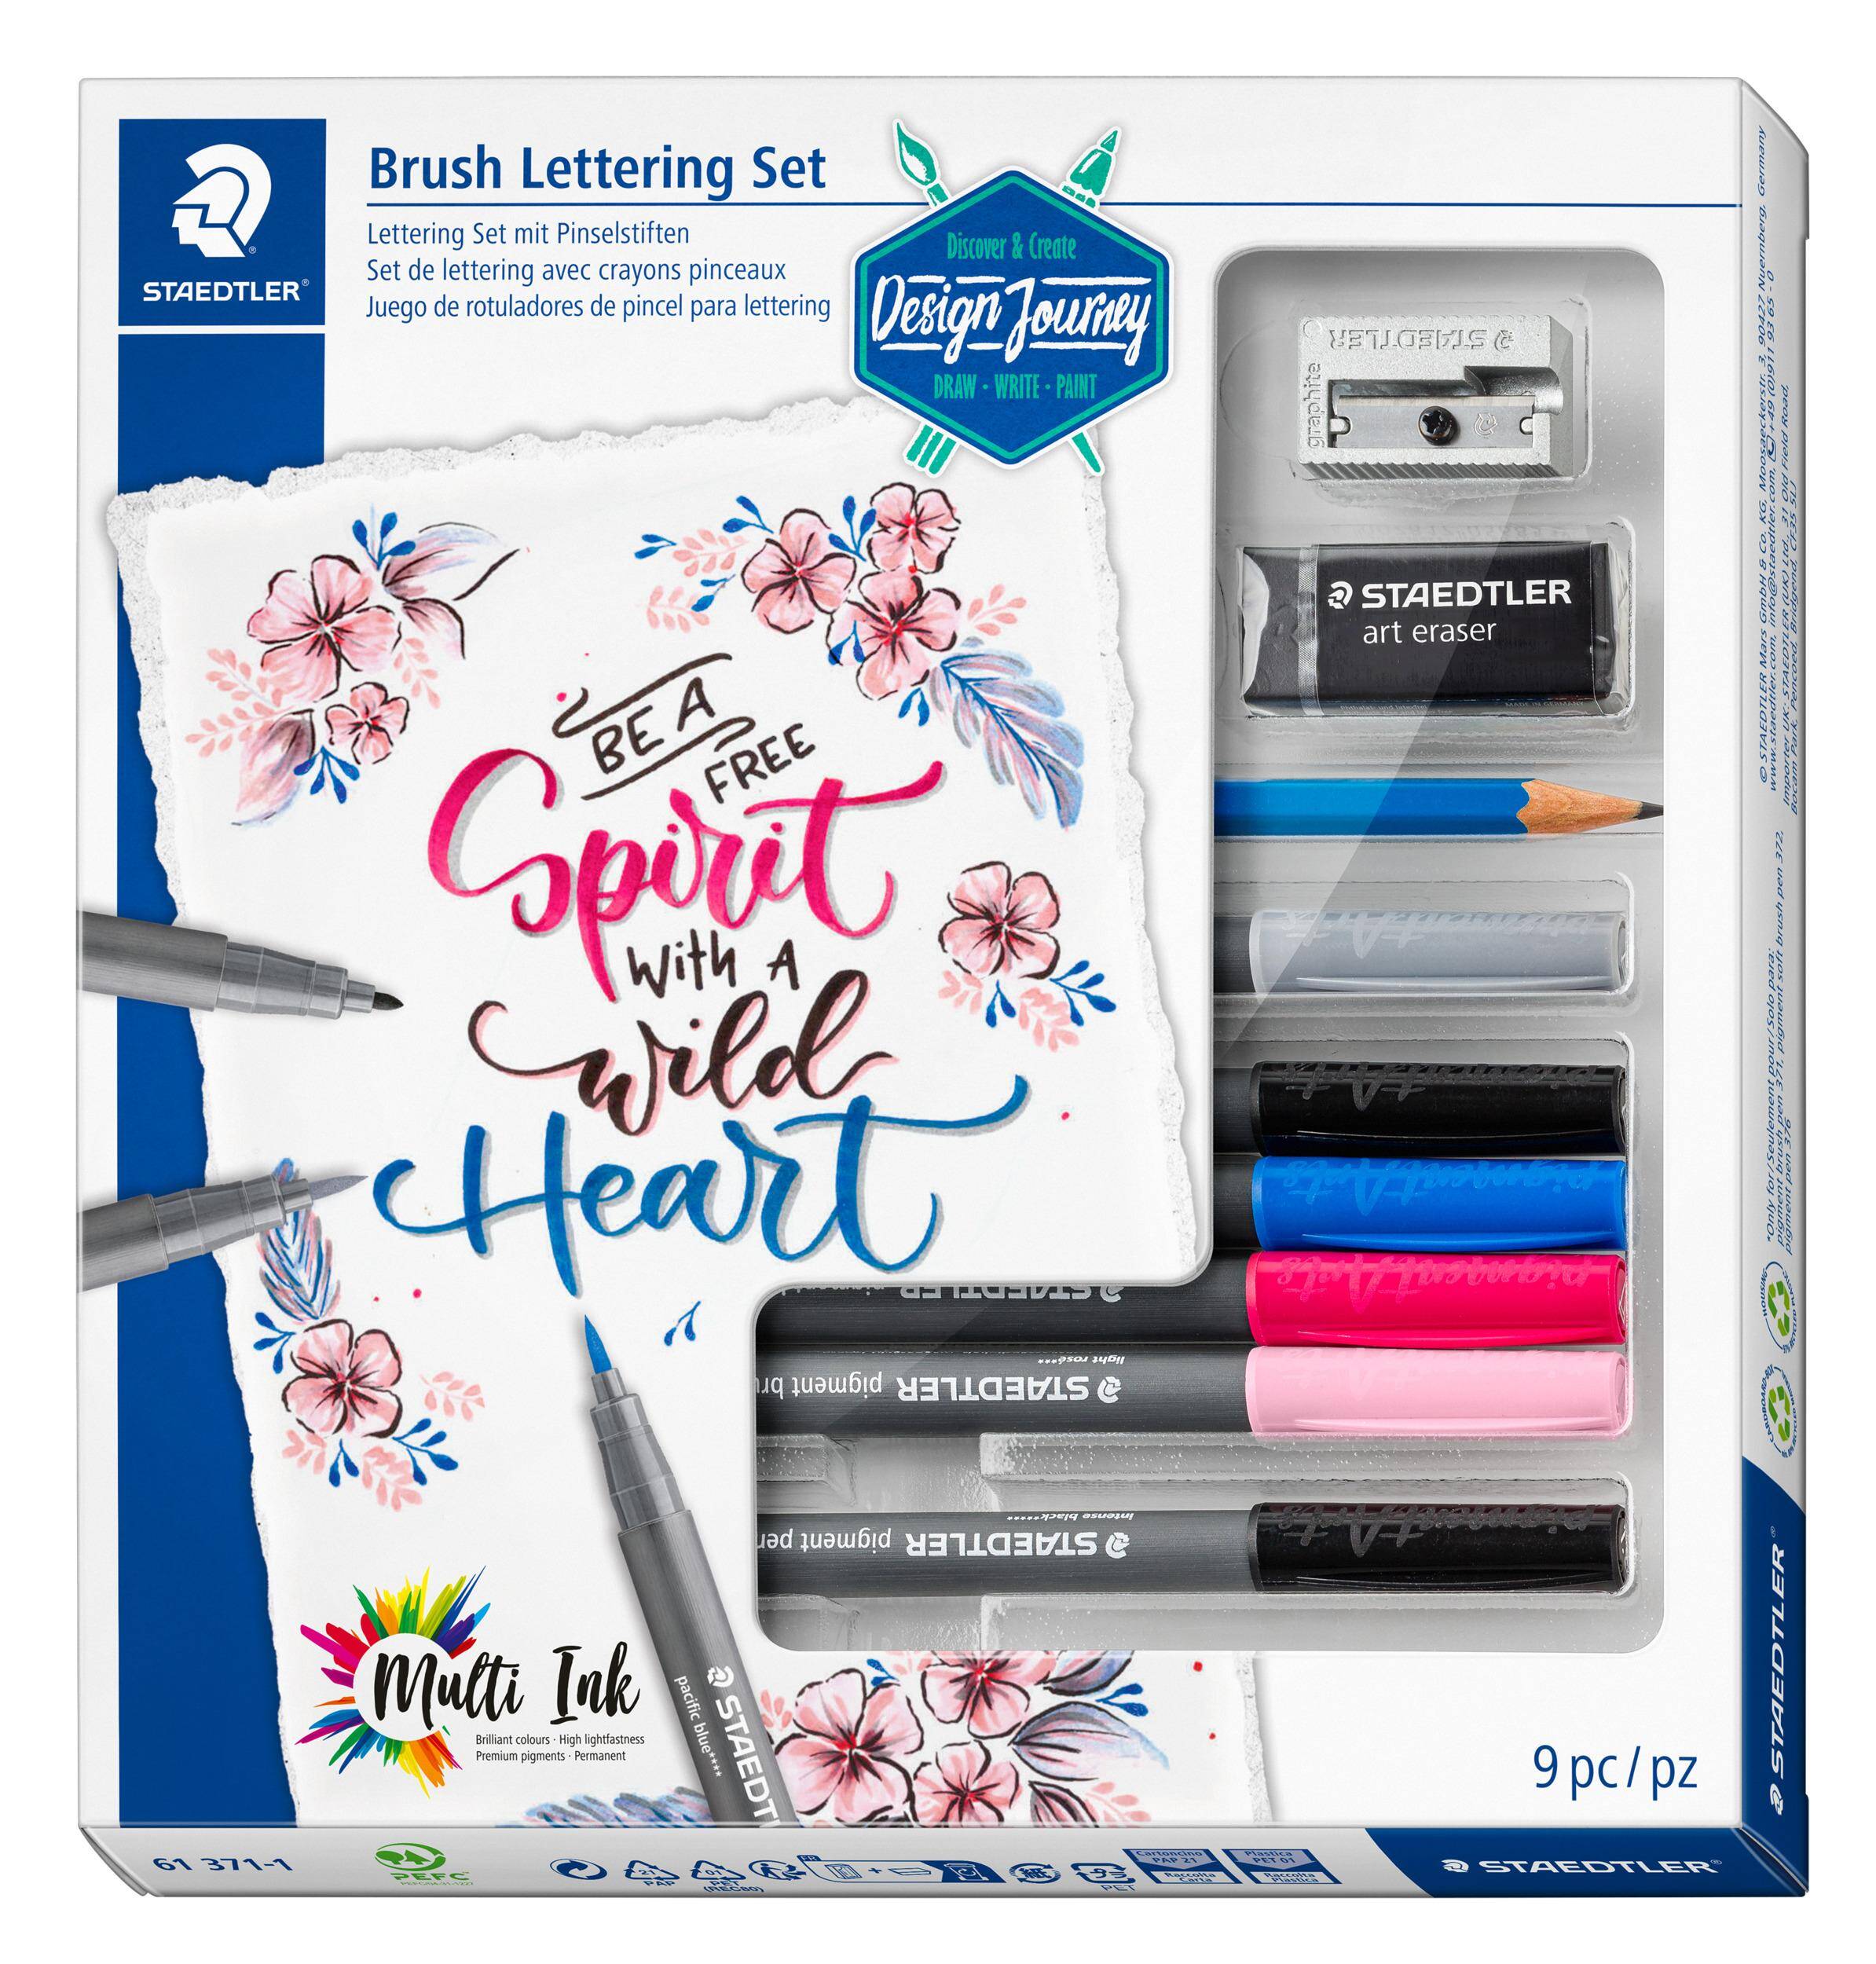 Zestaw do Brush Letteringu: 6 pisaków multi ink, ołówek, gumka, temperówka Staedtler